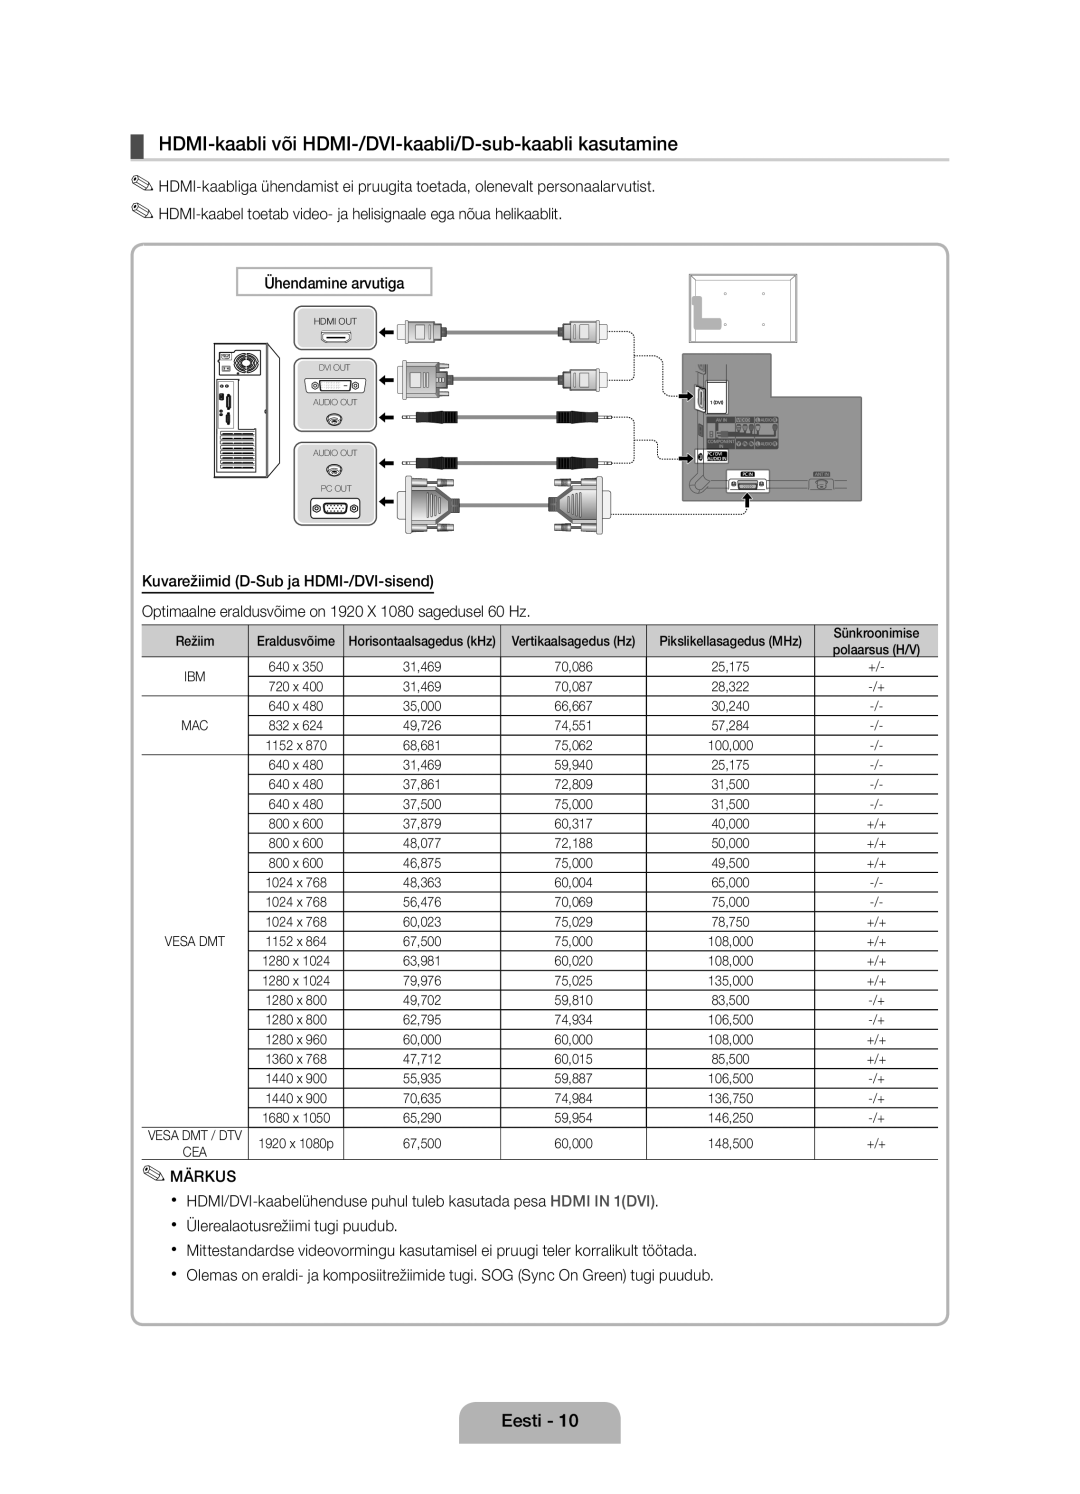 Samsung UE40D5000PWXBT manual HDMI-kaabli või HDMI-/DVI-kaabli/D-sub-kaabli kasutamine, Ühendamine arvutiga, Märkus 